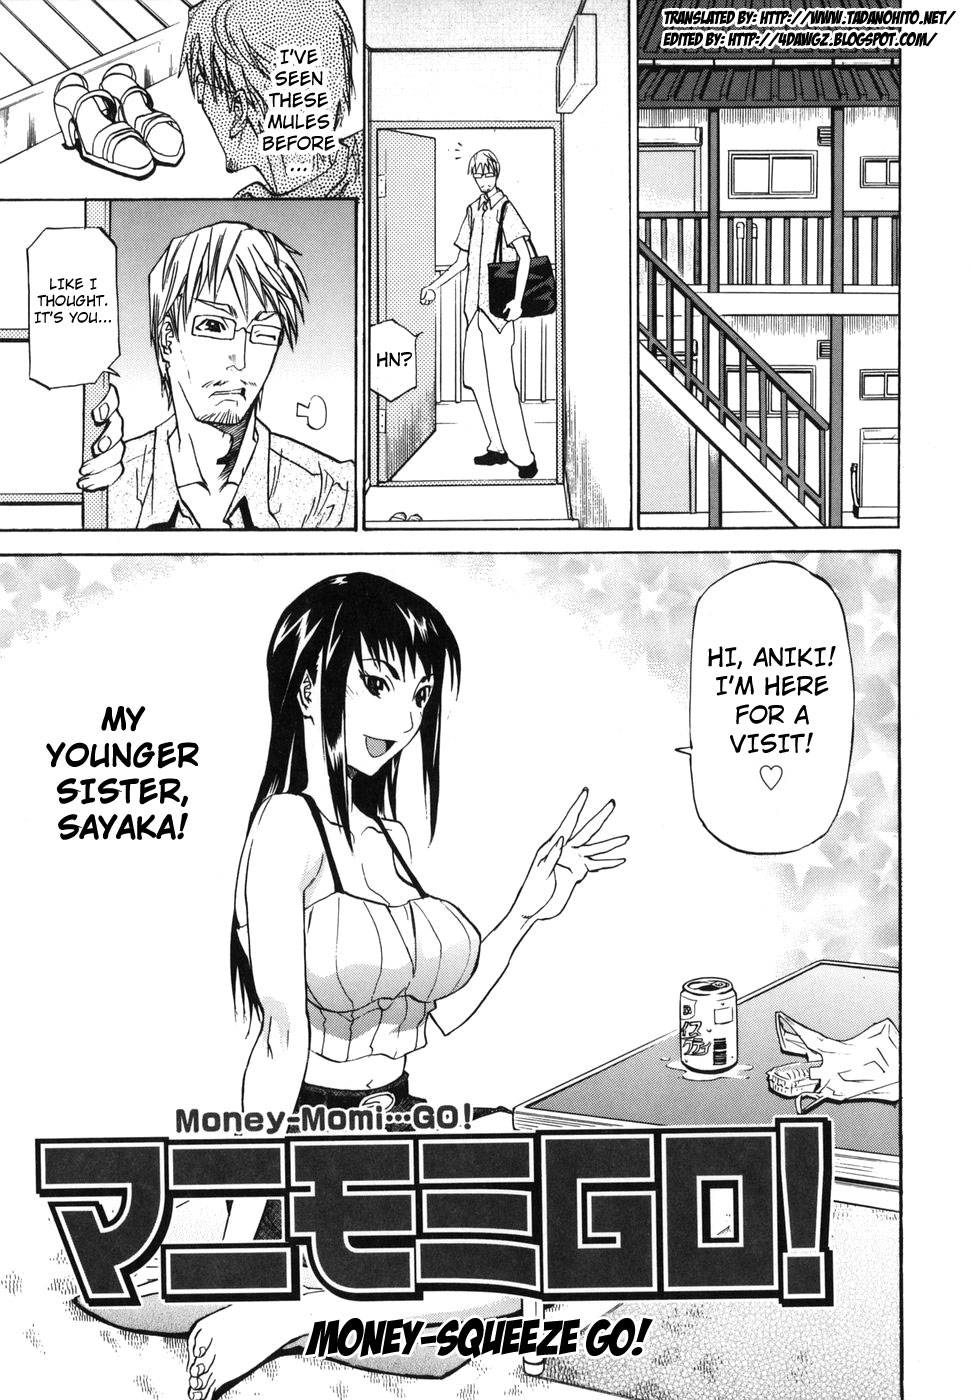 Hentai Manga Comic-Money-Squeeze GO!-Read-1